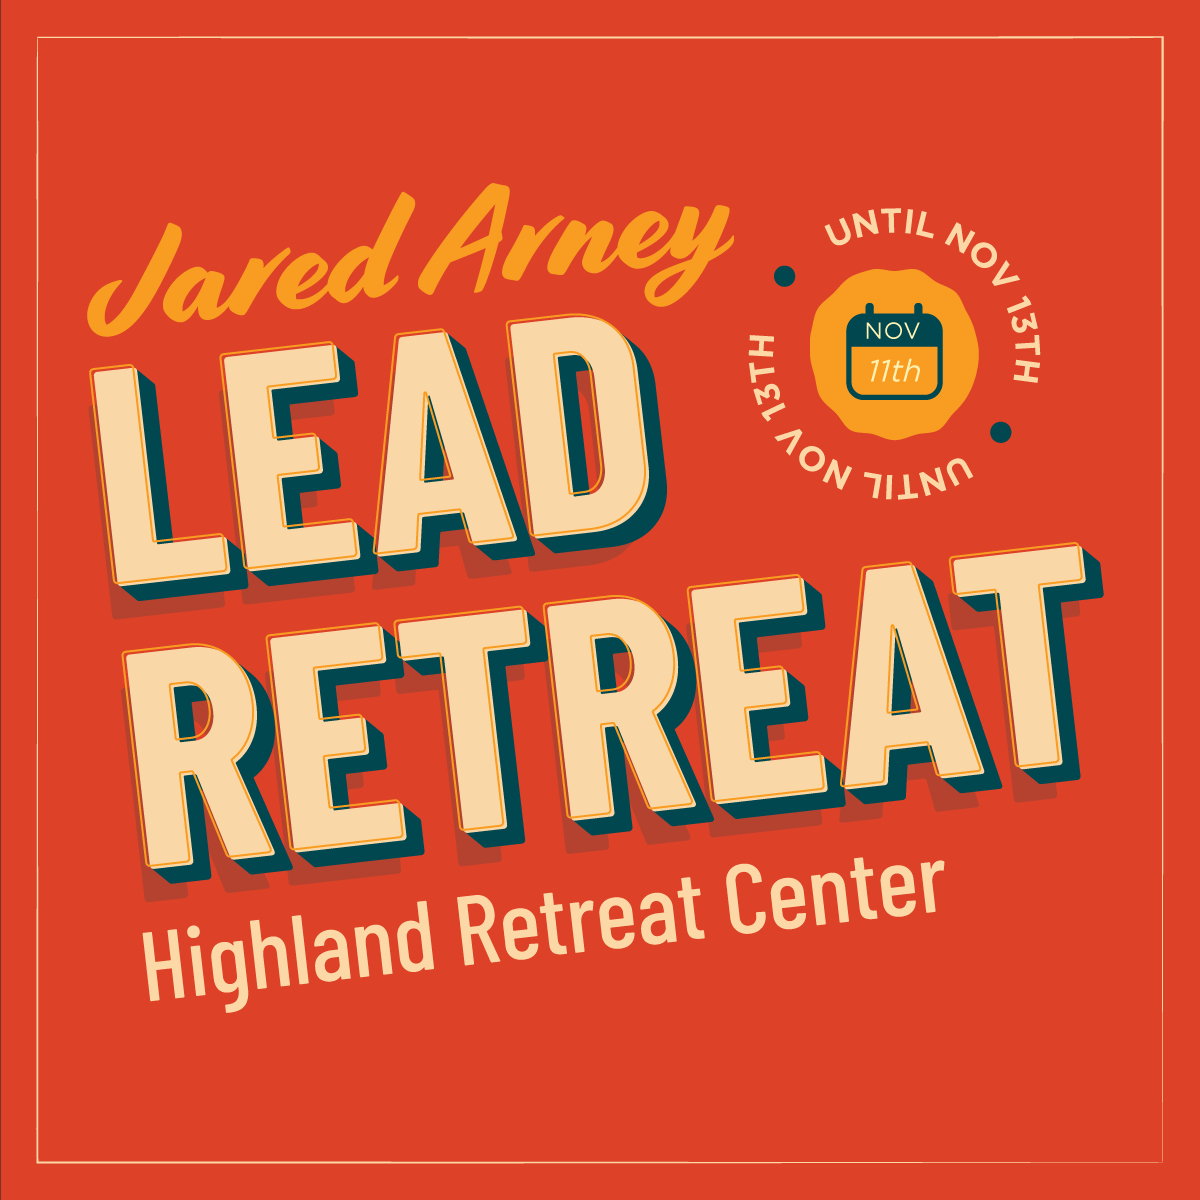 jared_arney_lead_retreat